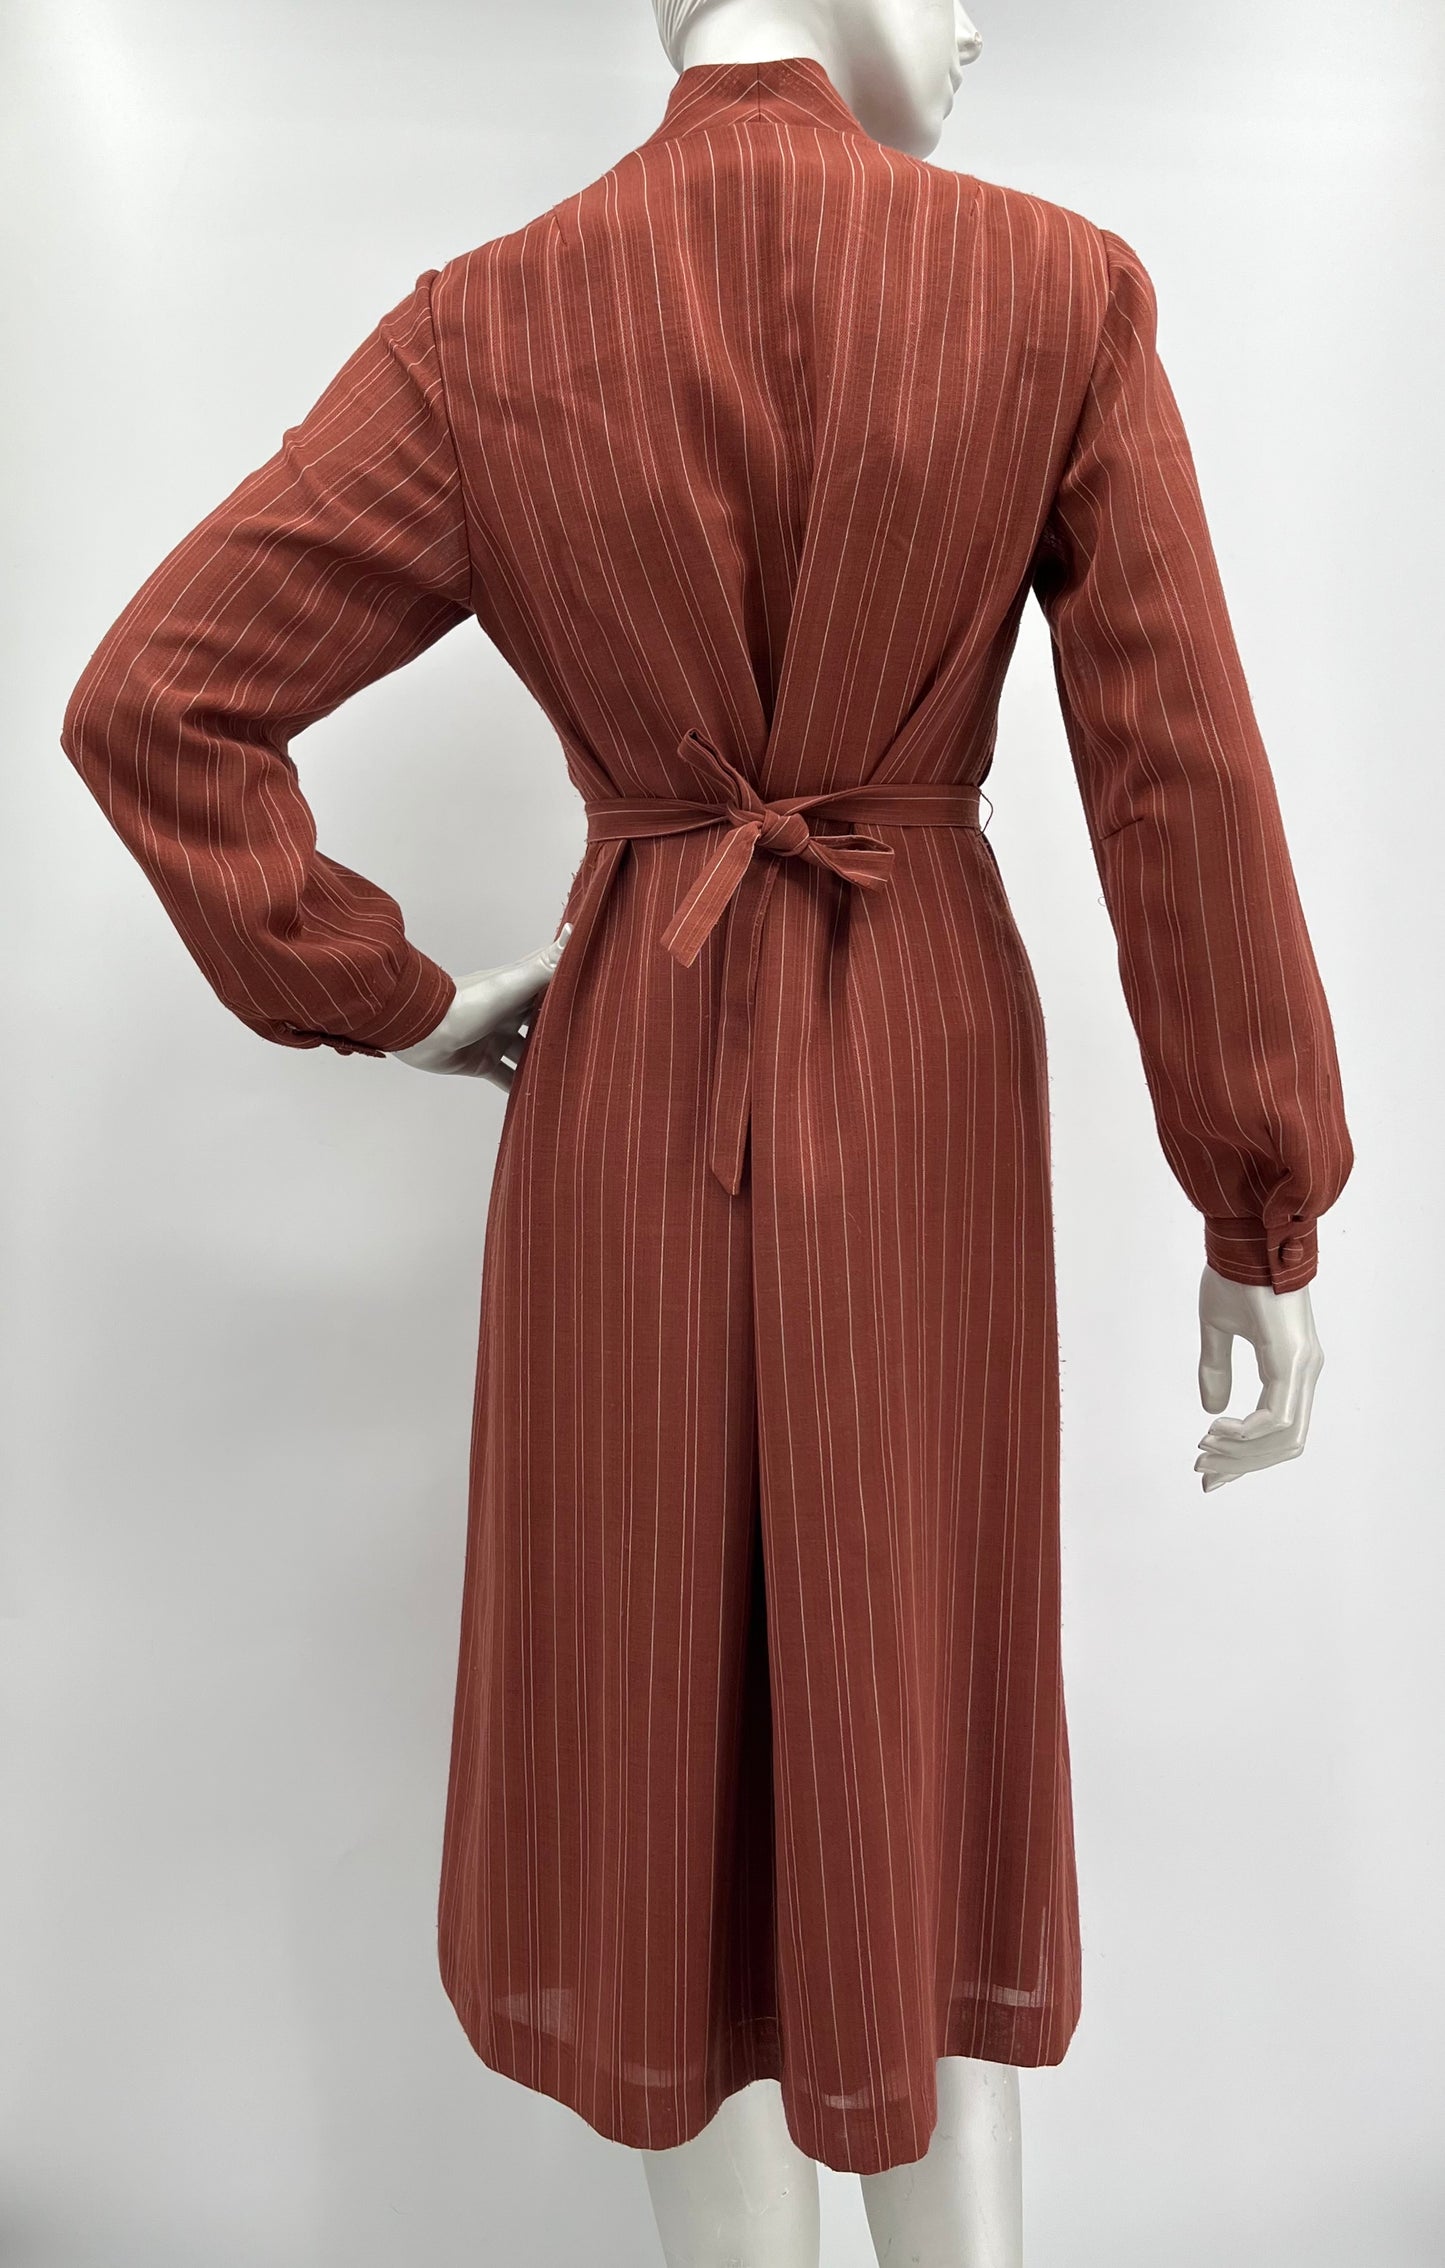 Tammer-Leninki, ruosteenpunainen villasekoitemekko ja vyö, 60-luku, koko 38